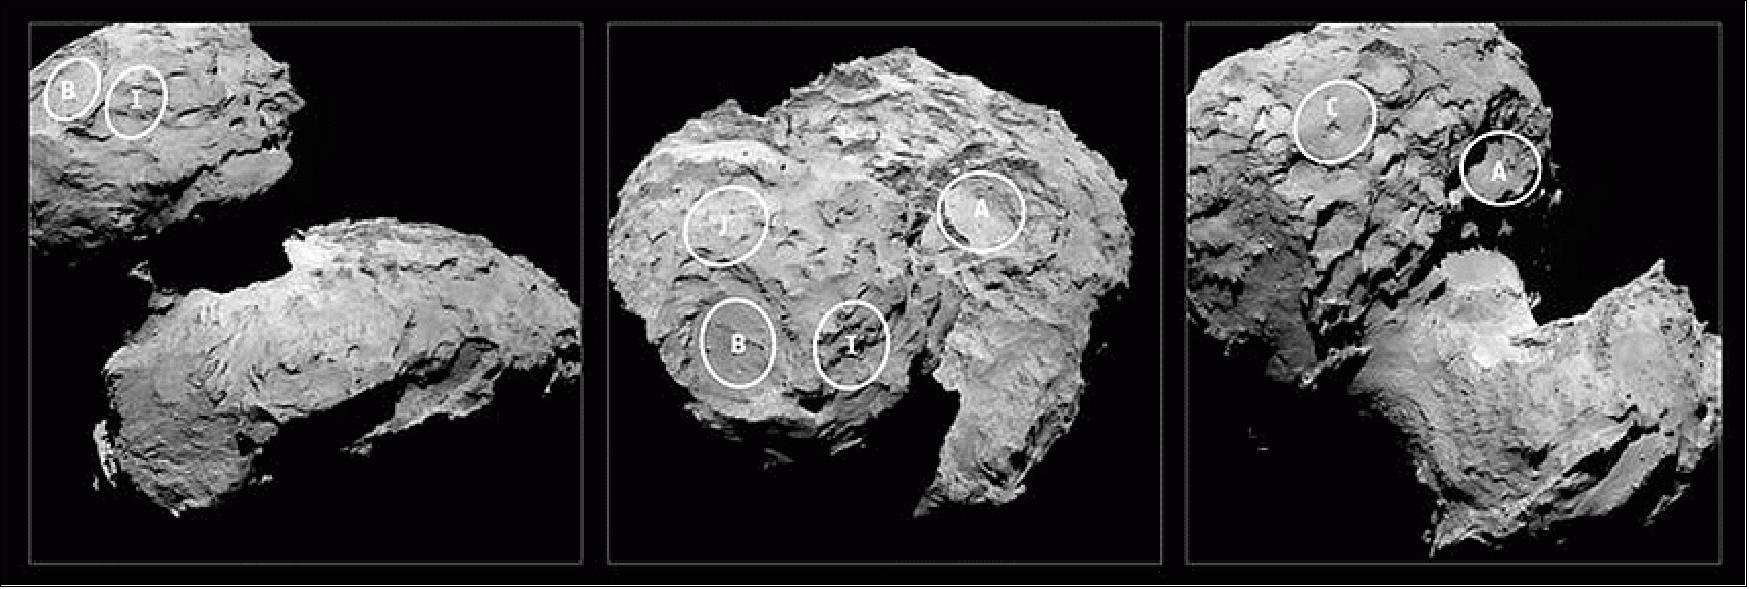 Figure 171: Philae candidate landing sites (image credit: ESA, Rosetta, MPS for OSIRIS Team MPS, UPD, LAM, IAA SSO, INTA, UPM, DASP, IDA)